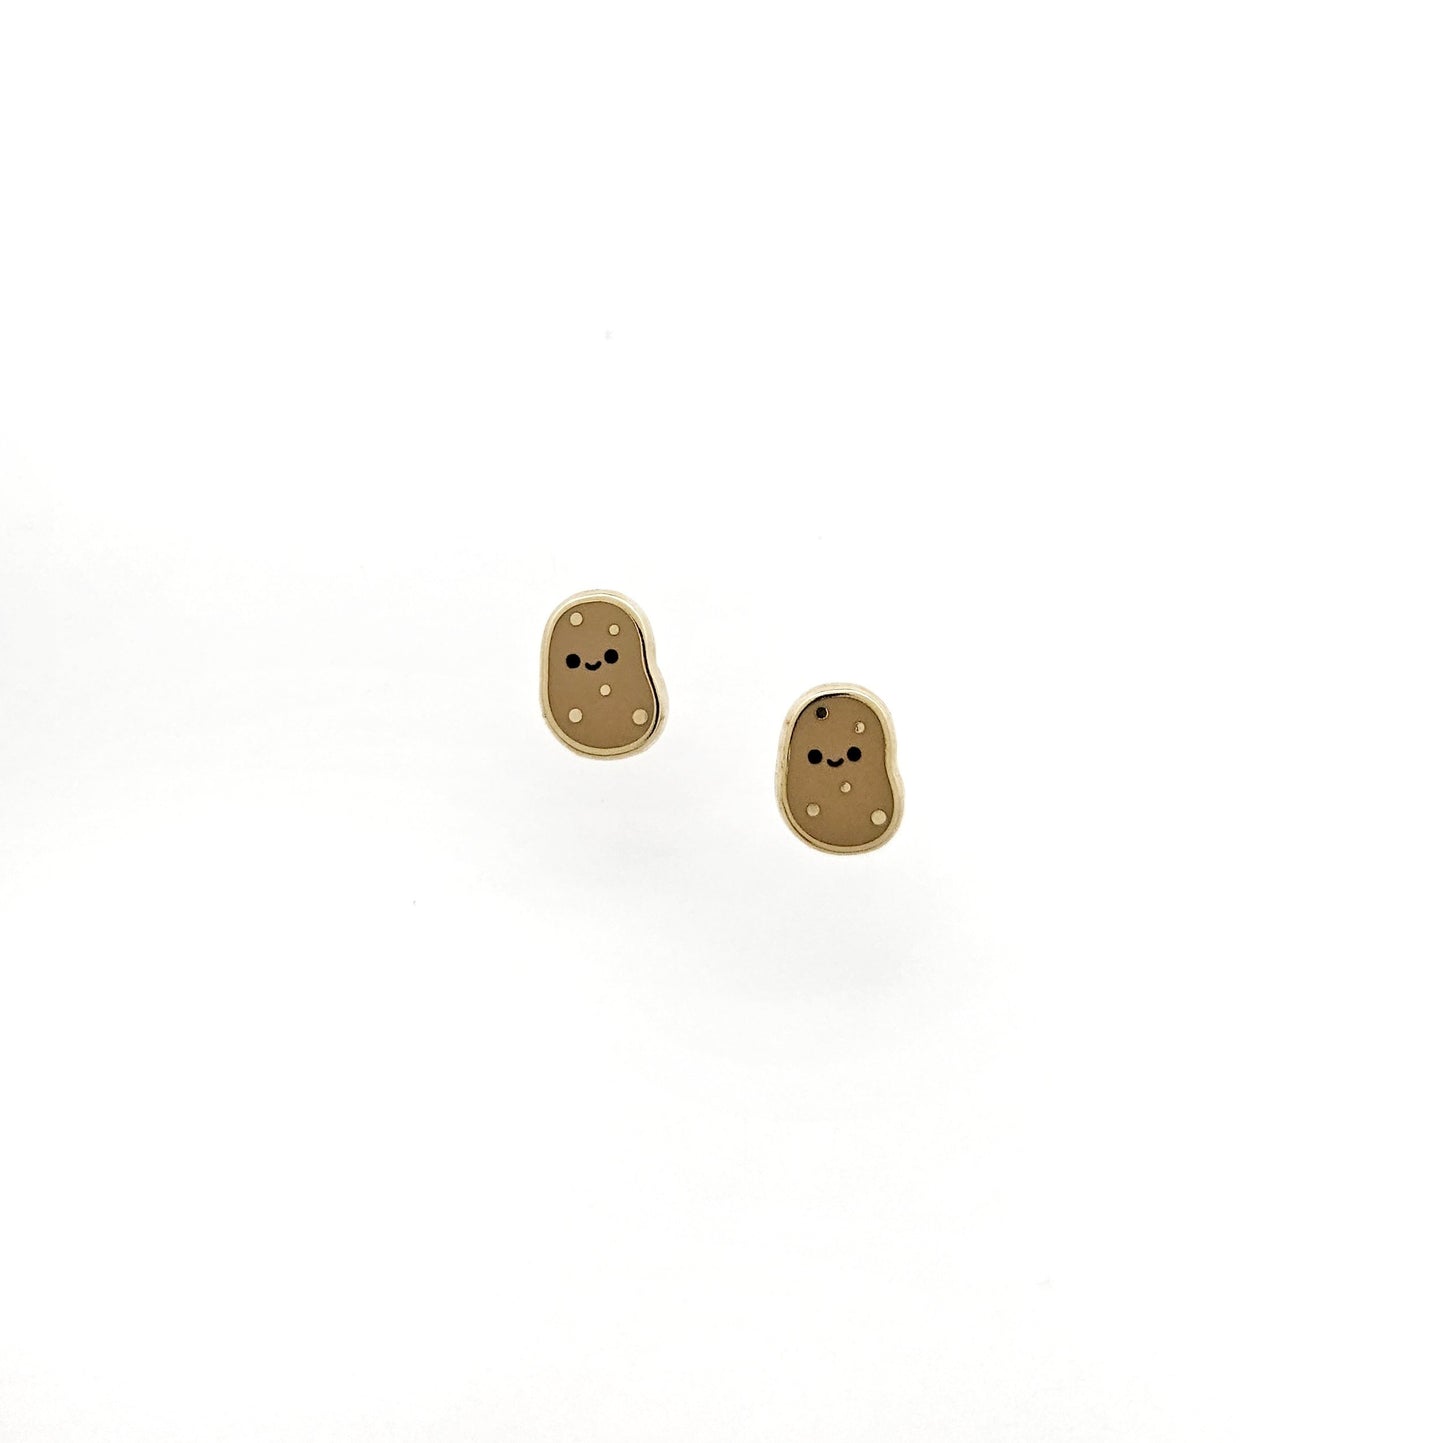 Lil Potato earrings